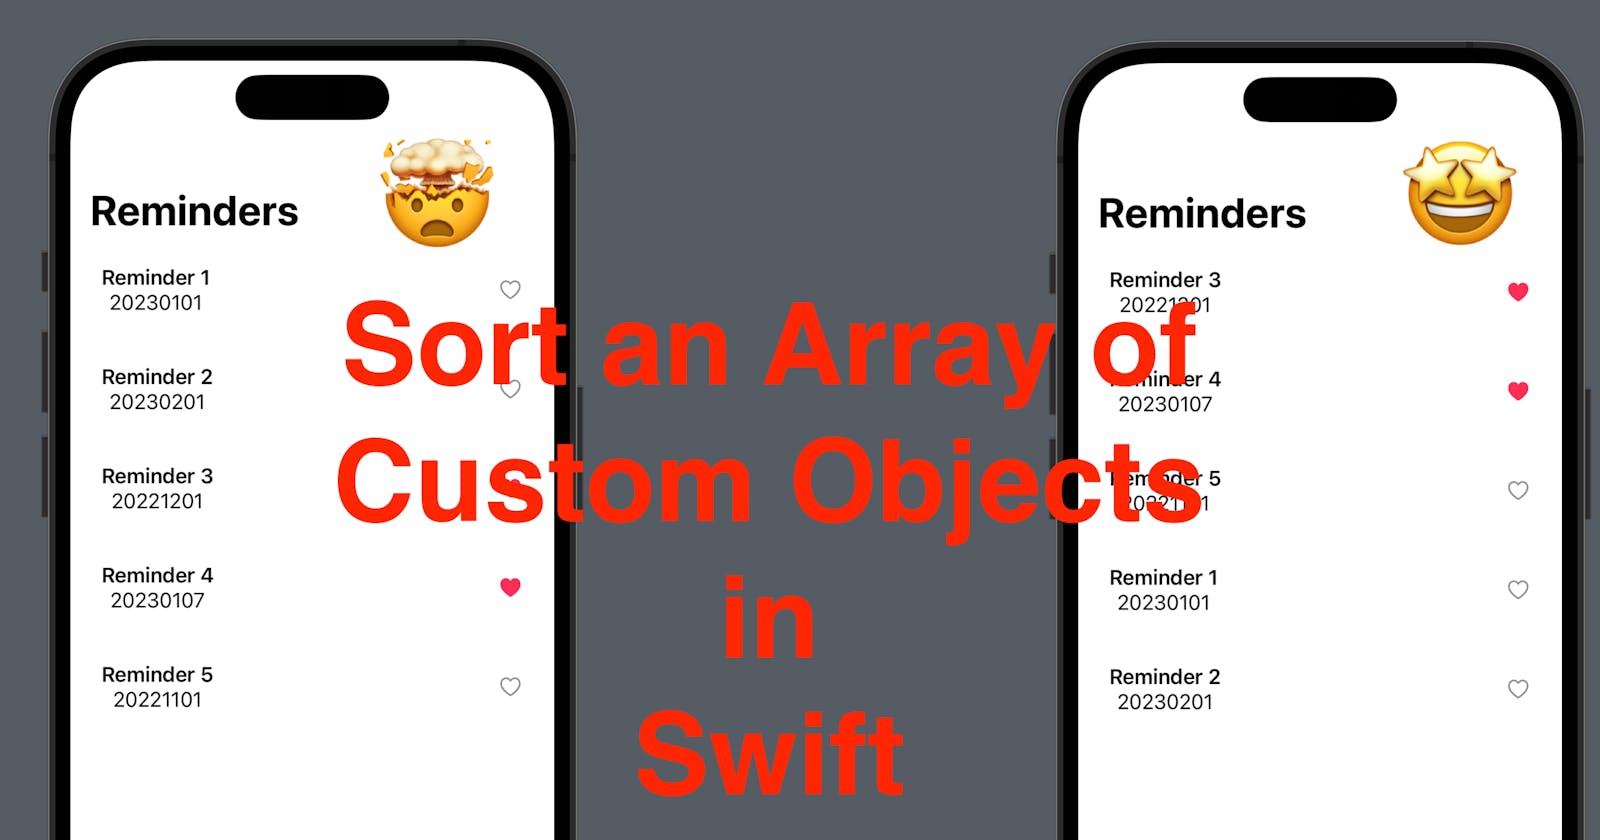 Sort an Array of Custom Objects in Swift